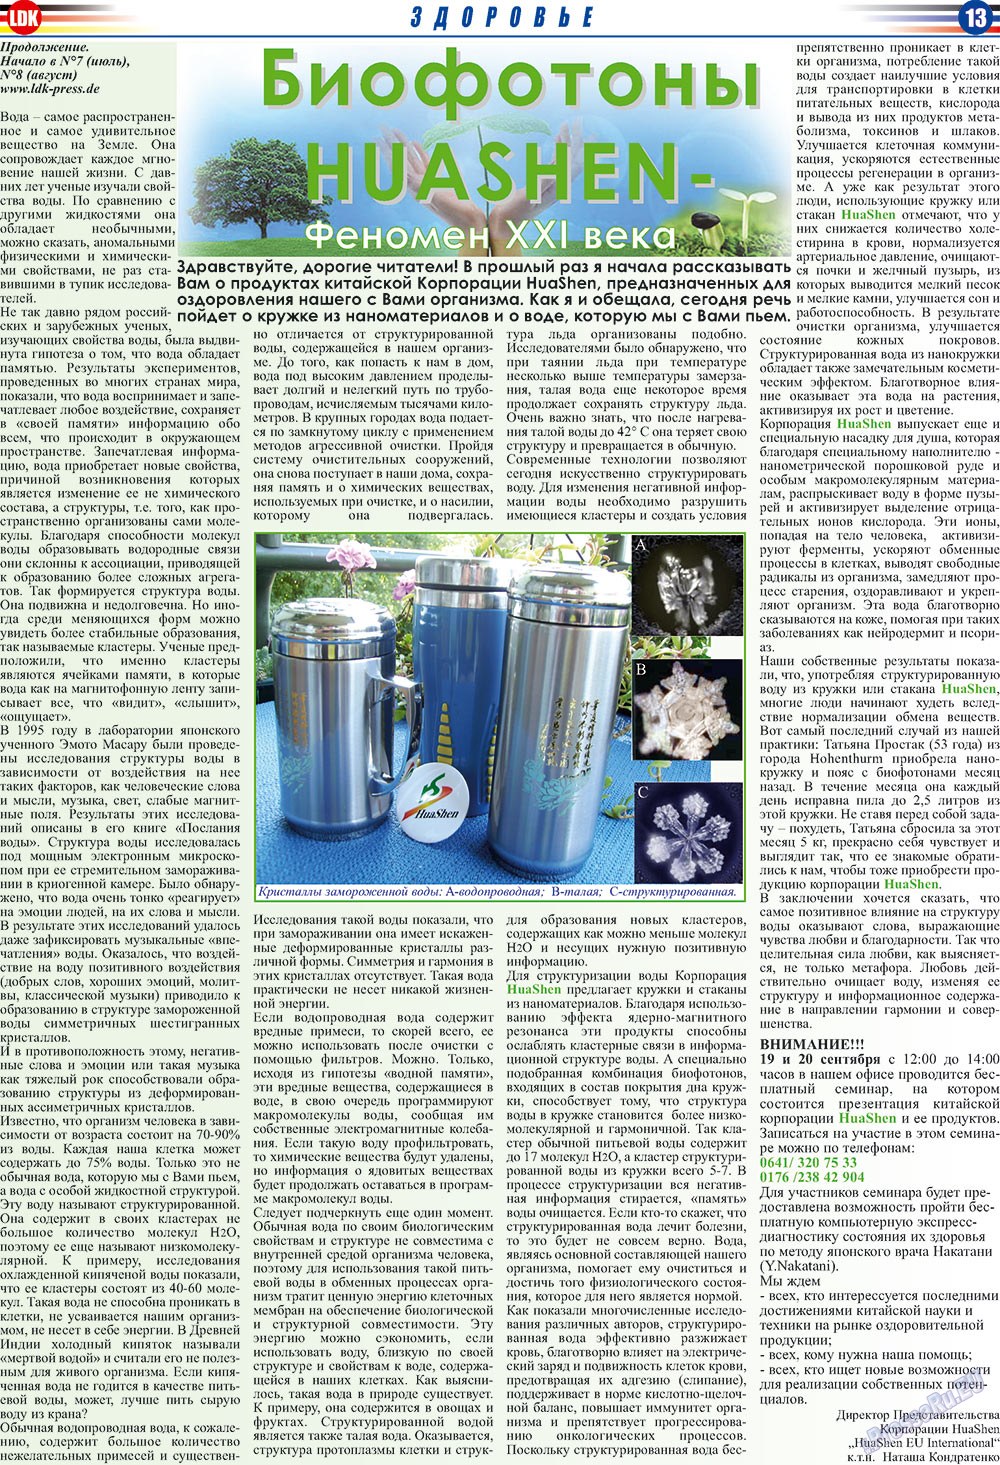 LDK по-русски (газета). 2009 год, номер 9, стр. 13